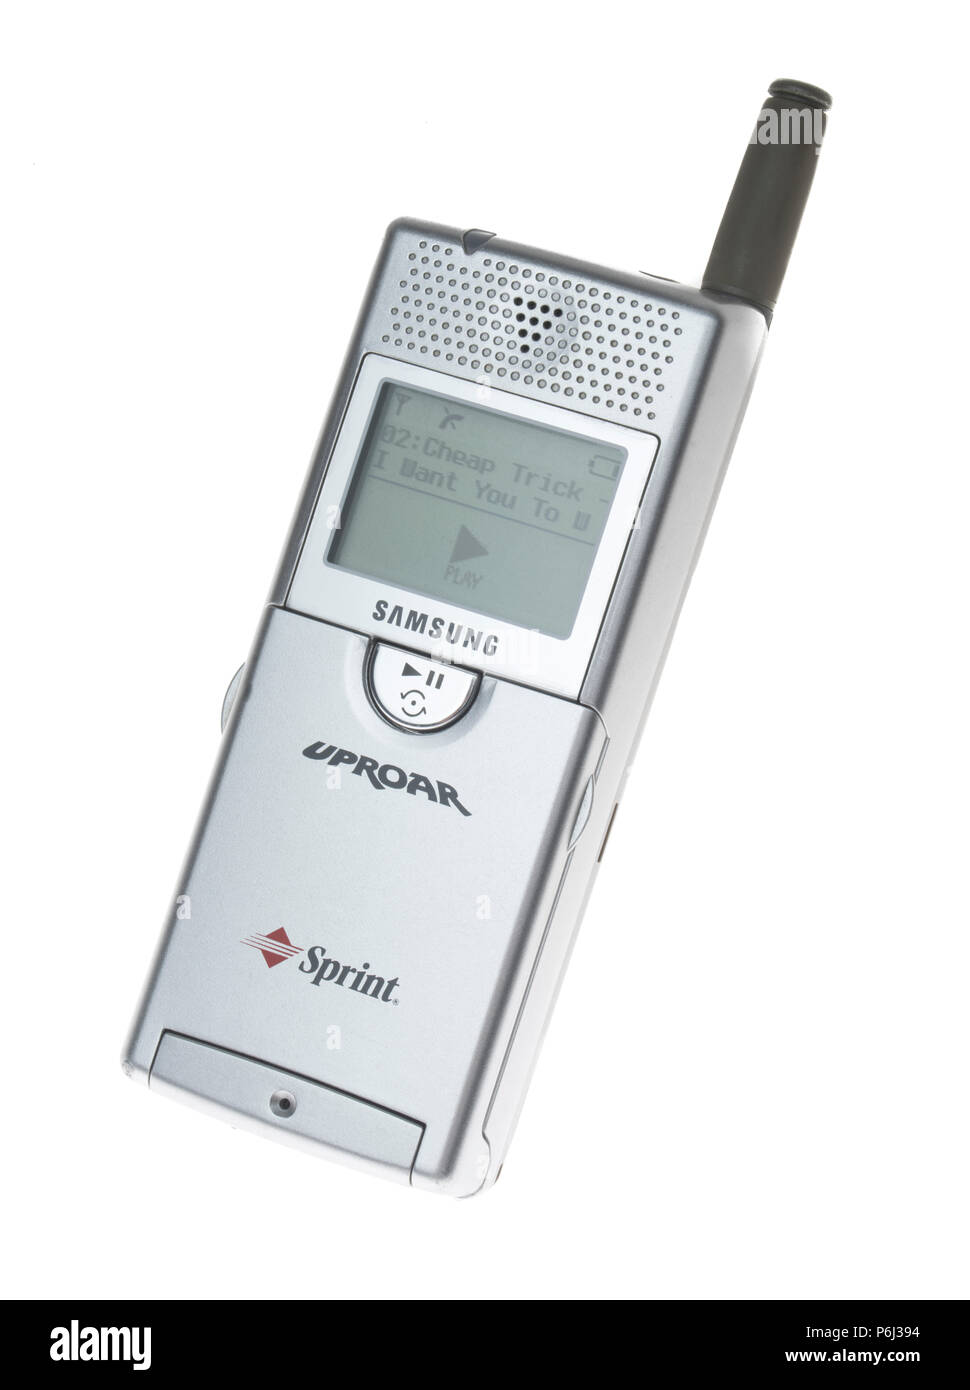 Samsung SPH-M100 (Tumult) startete 2000. Erstes Handy mit MP3-Player  Stockfotografie - Alamy